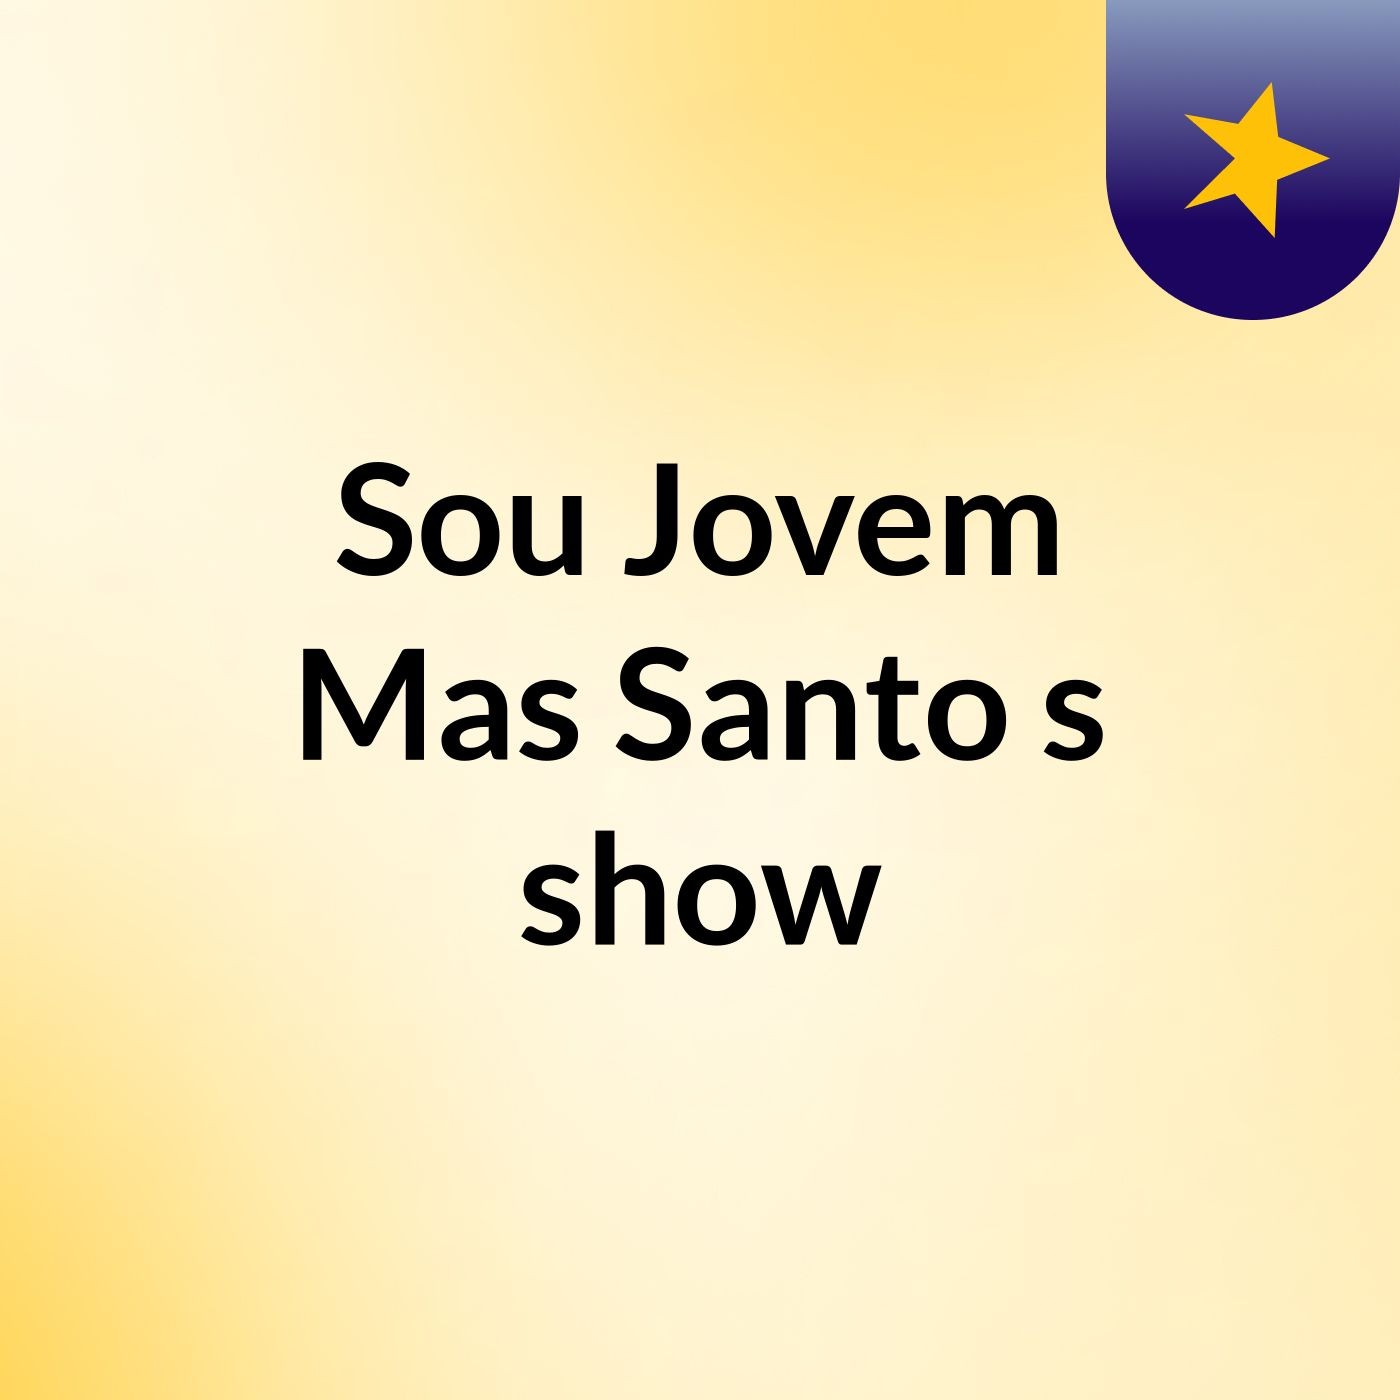 Sou Jovem Mas Santo's show